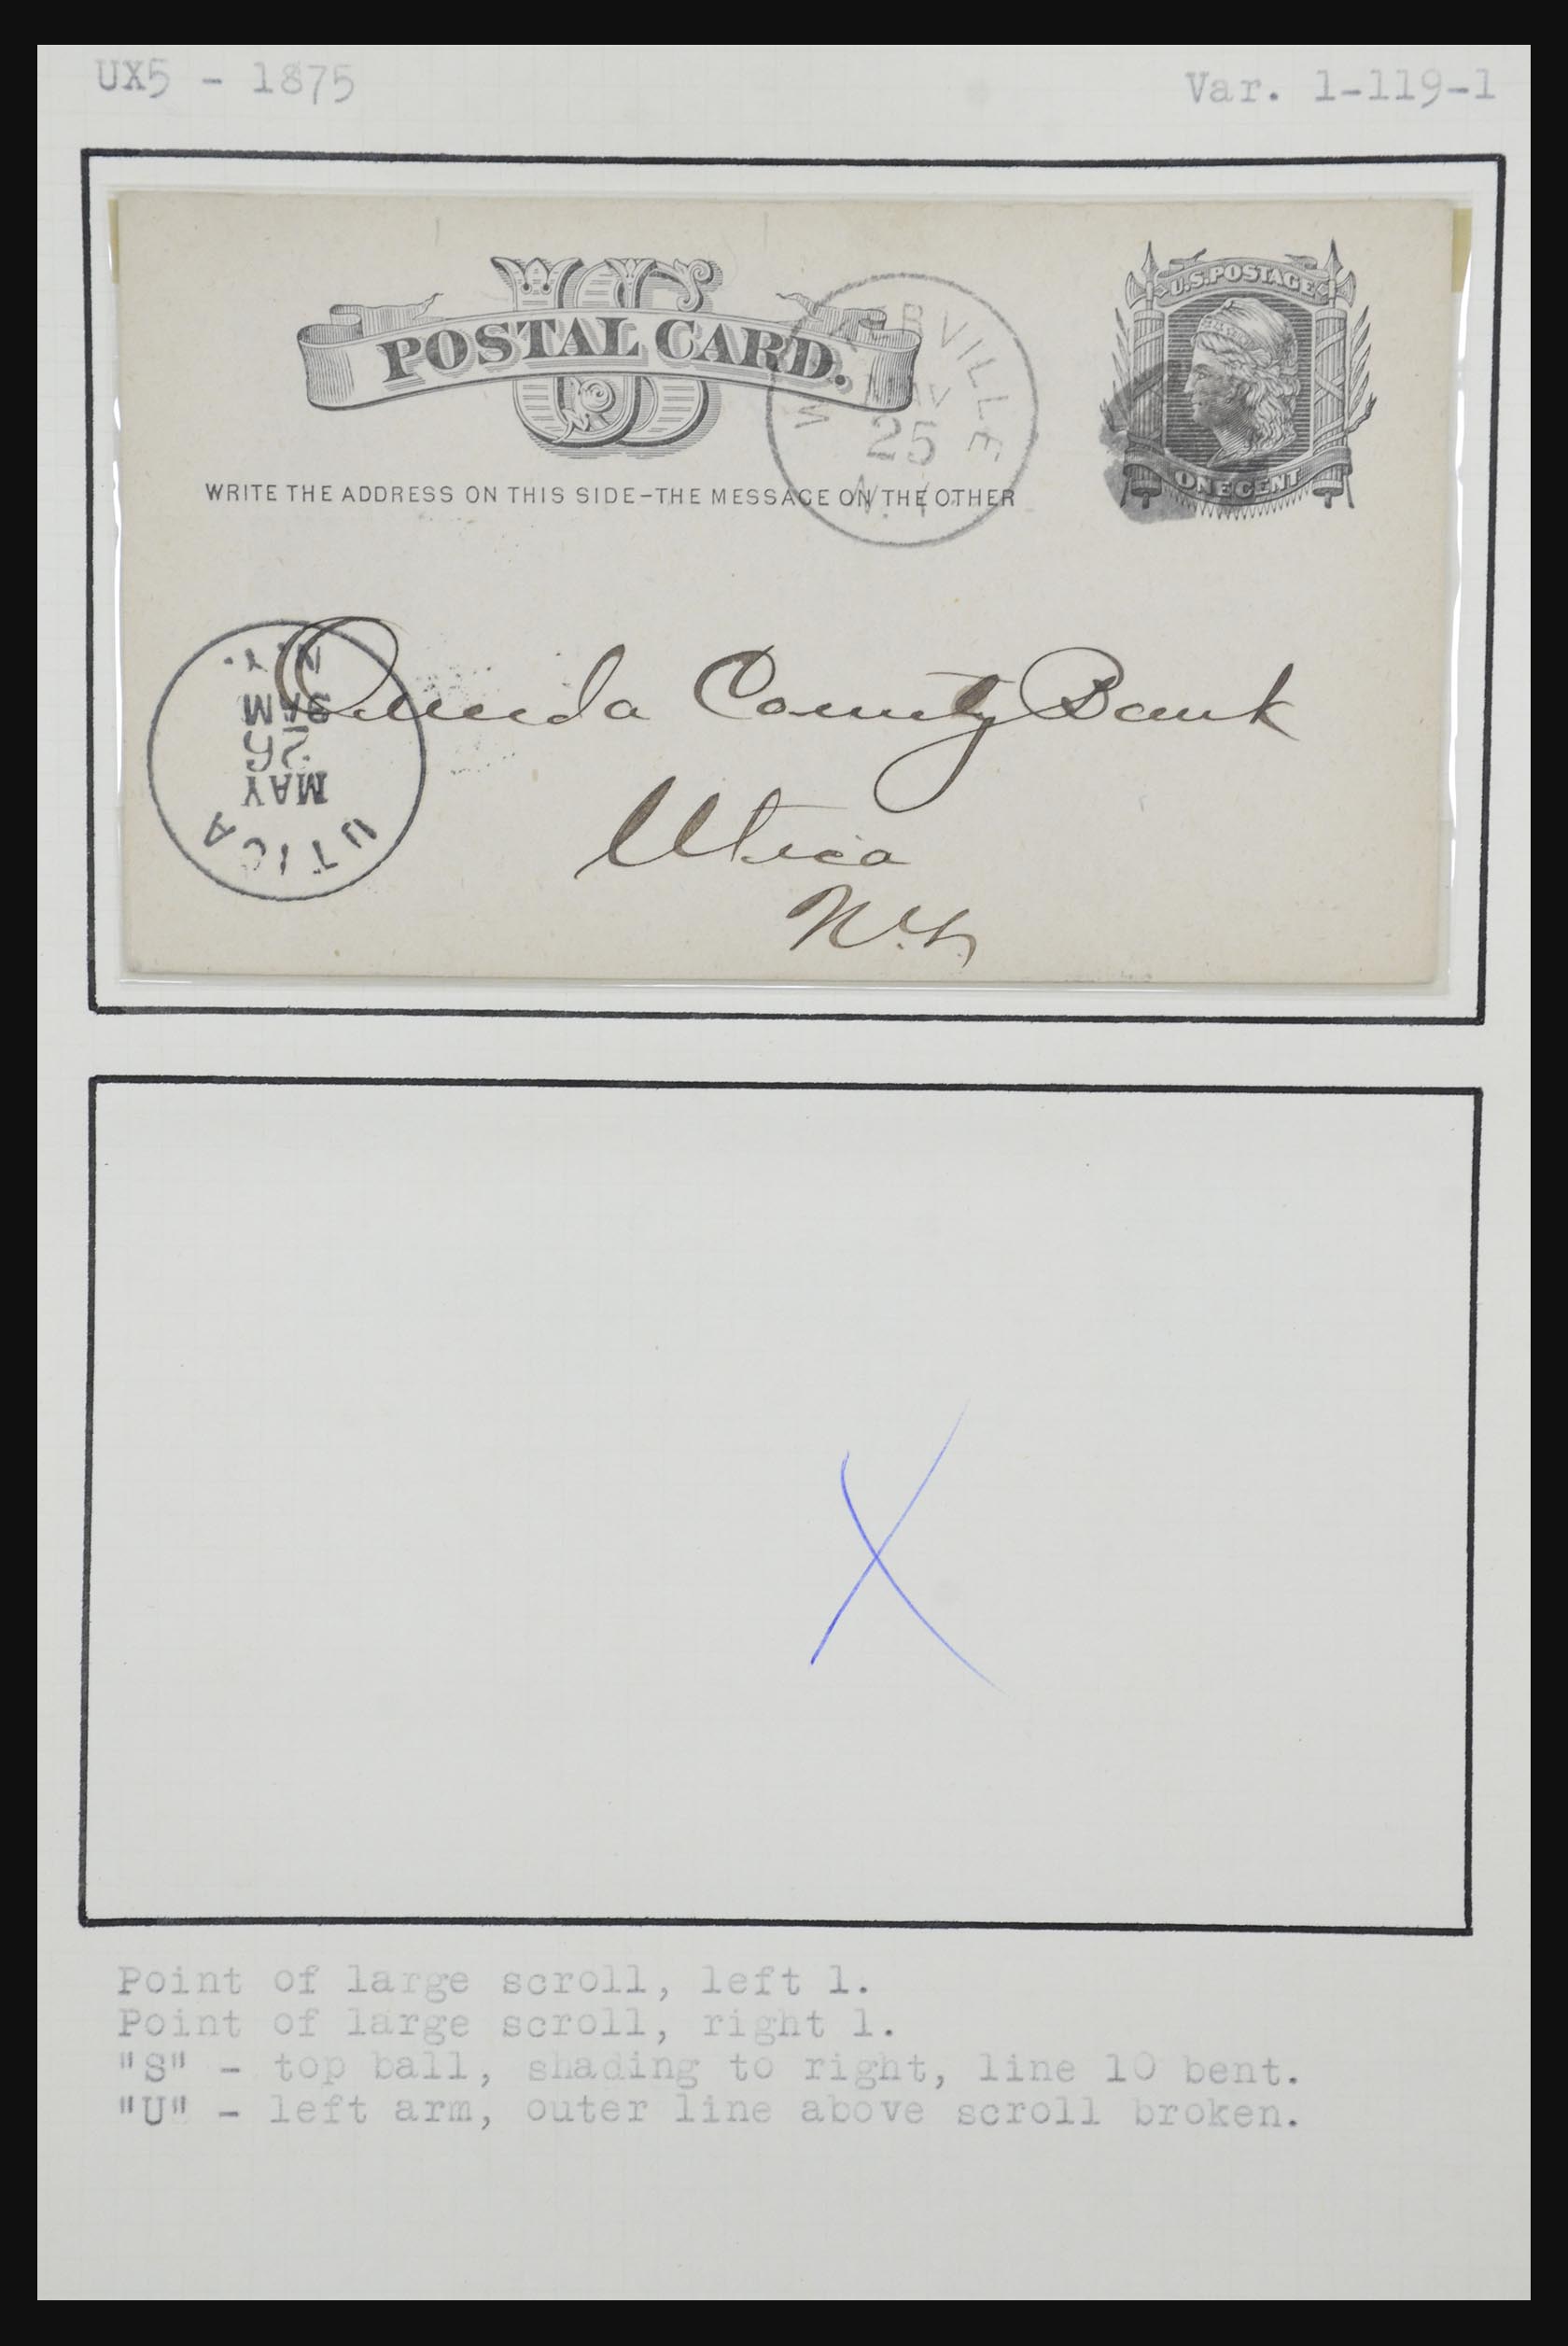 32209 084 - 32209 USA briefkaarten 1873-1950.